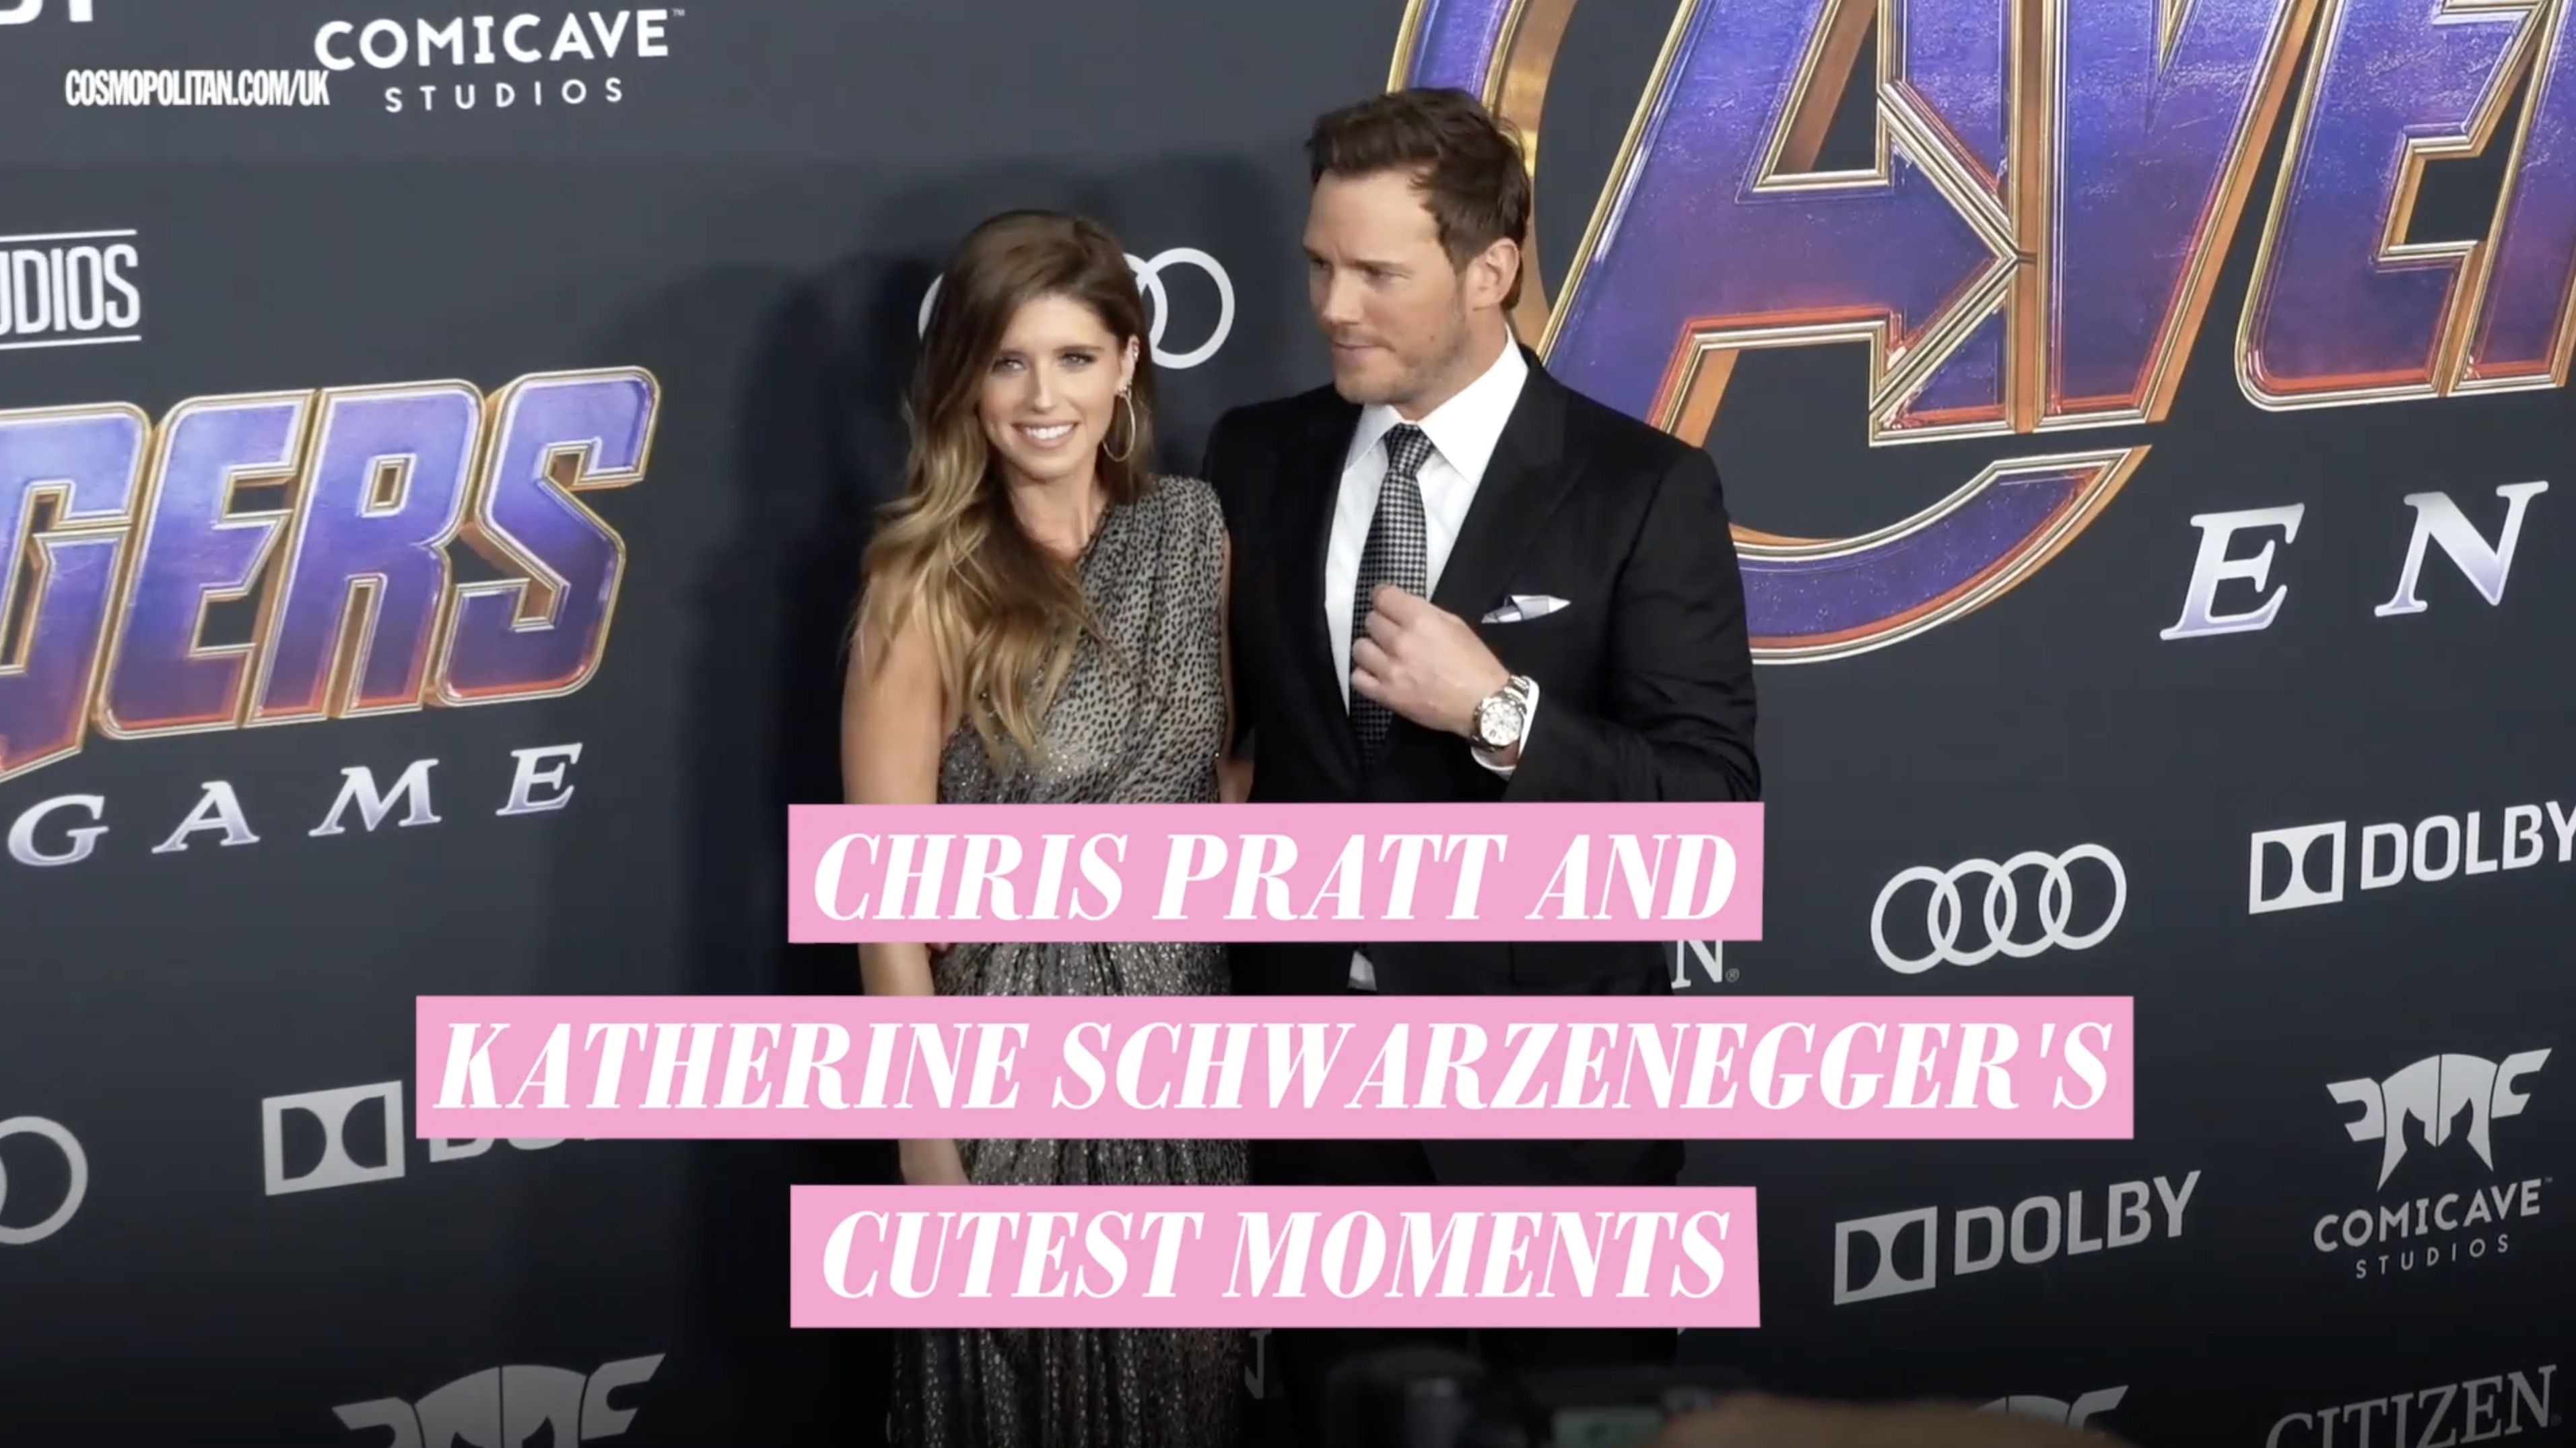 Chris Pratt and Katherine Schwarzenegger Relationship Timeline